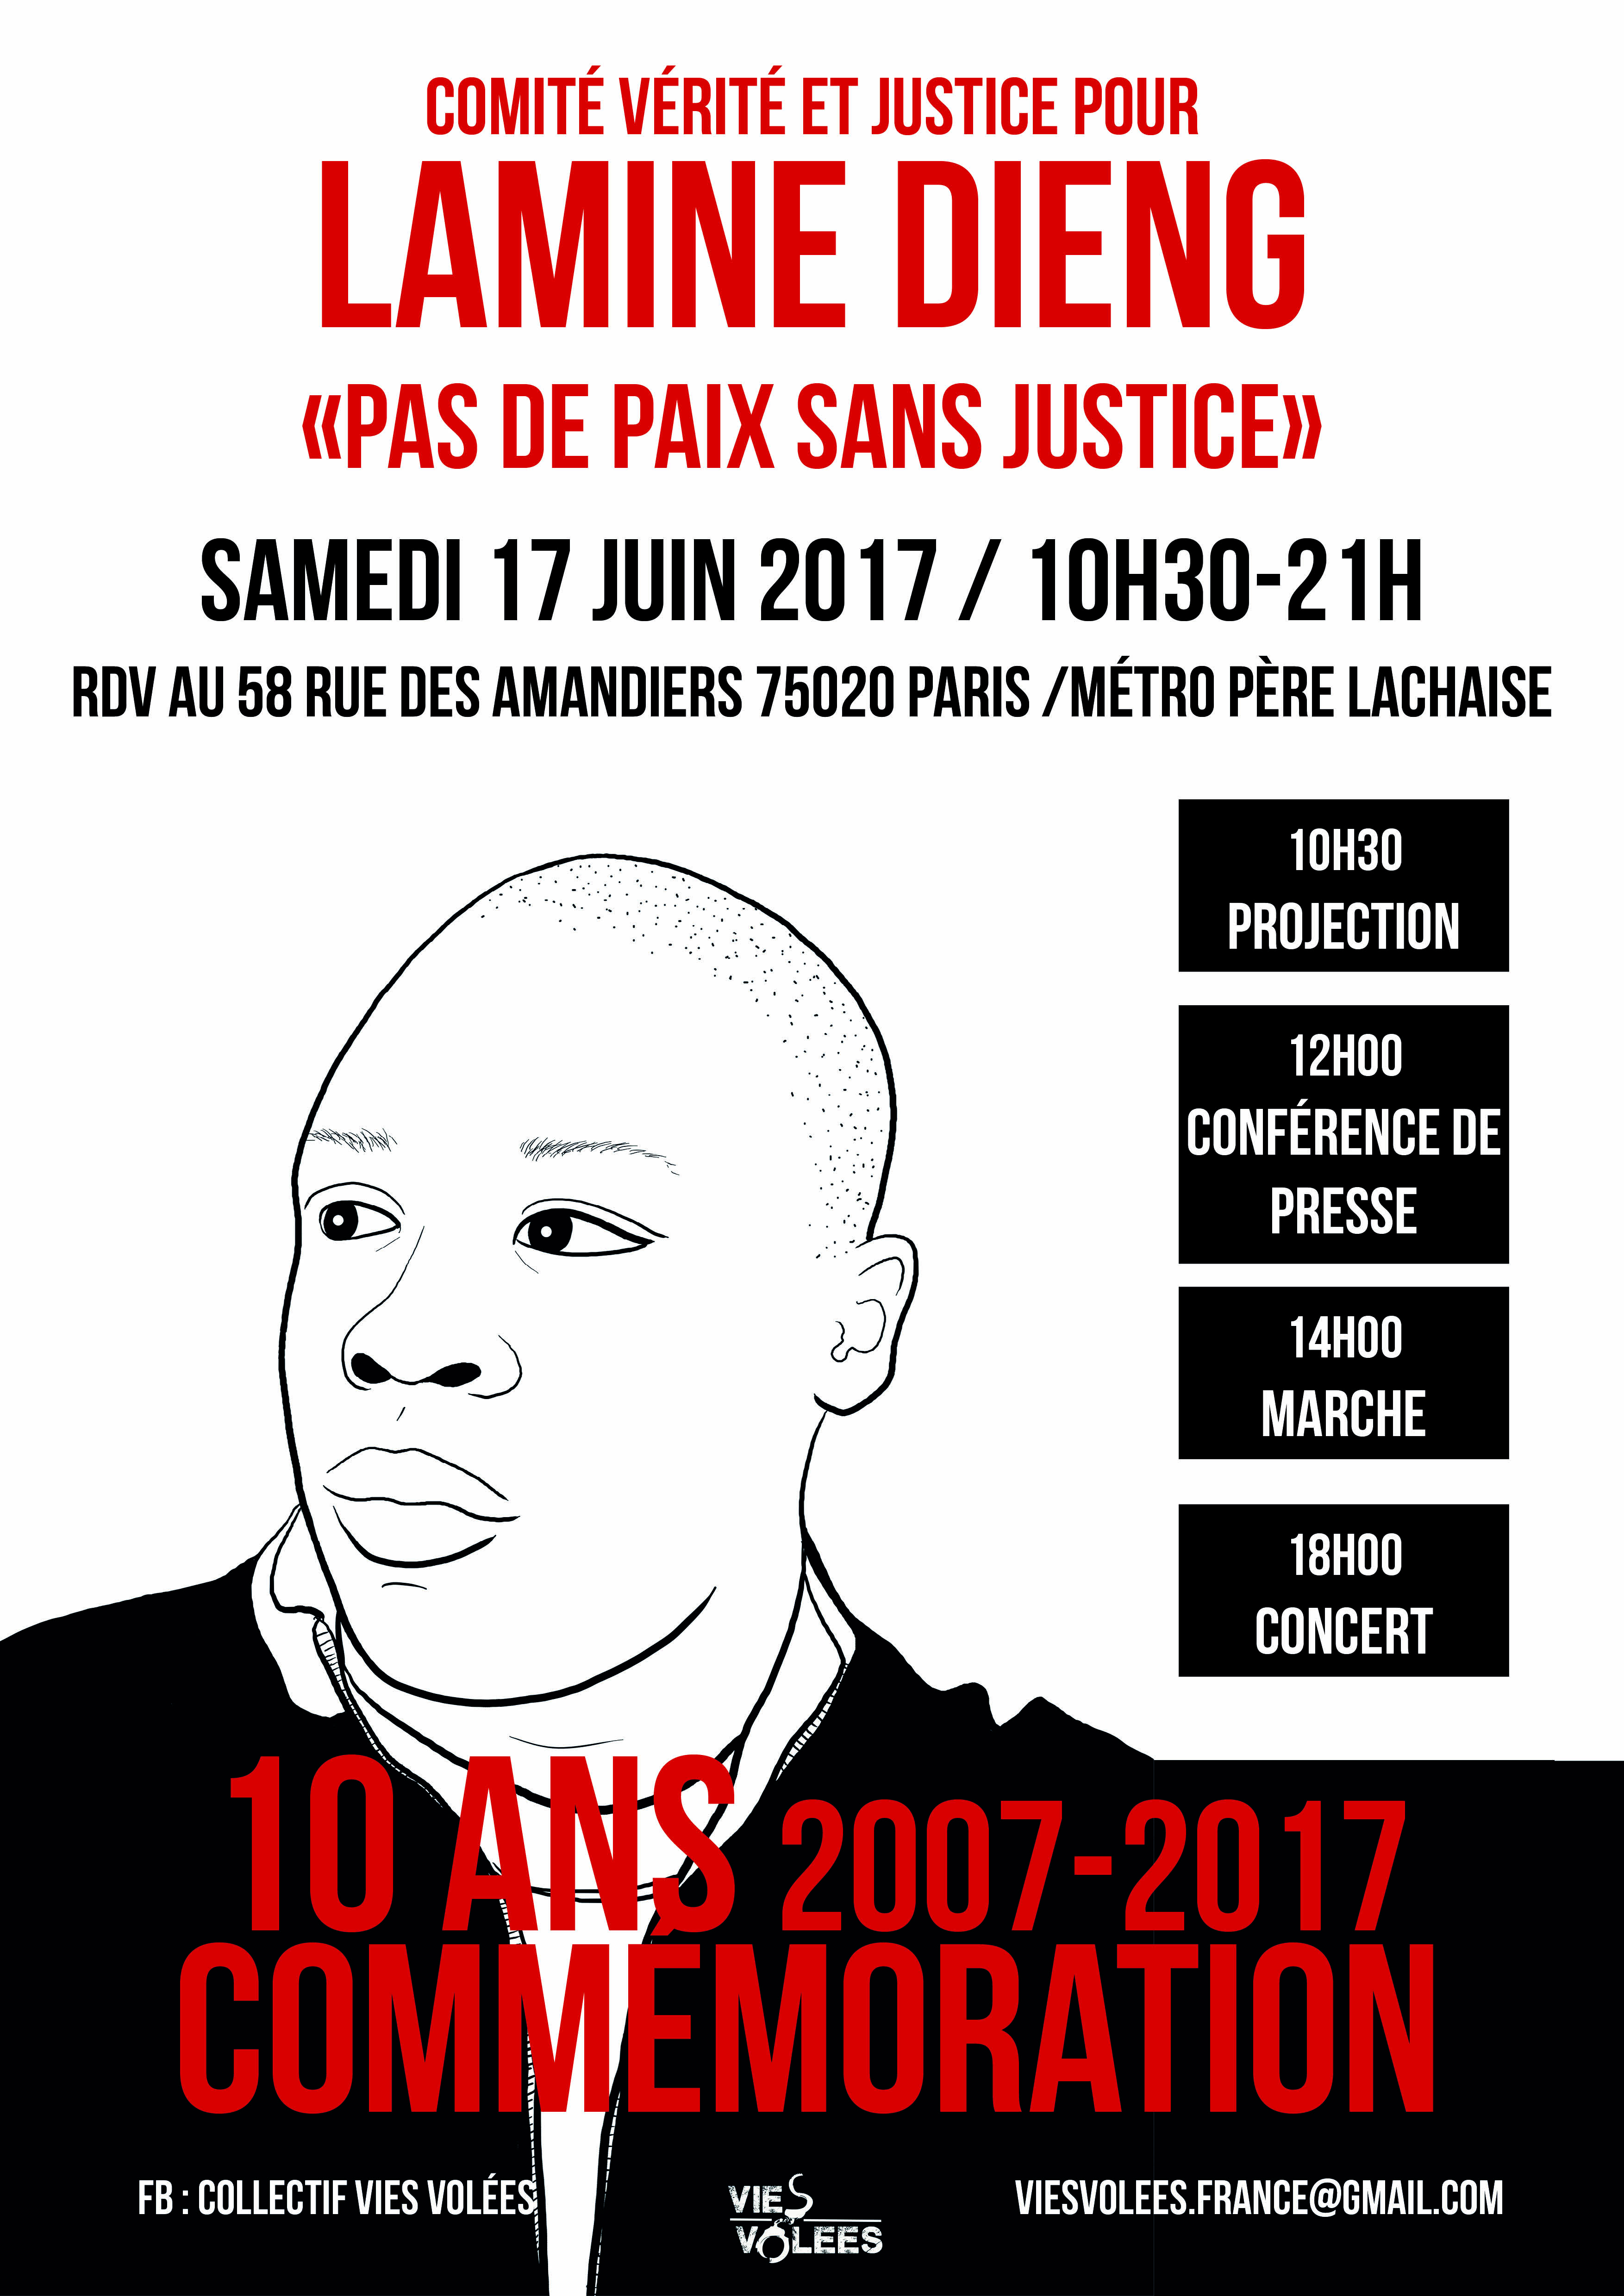 Commémoration "Lamine Dieng - 10 ans" le 17 juin 2017 à Paris